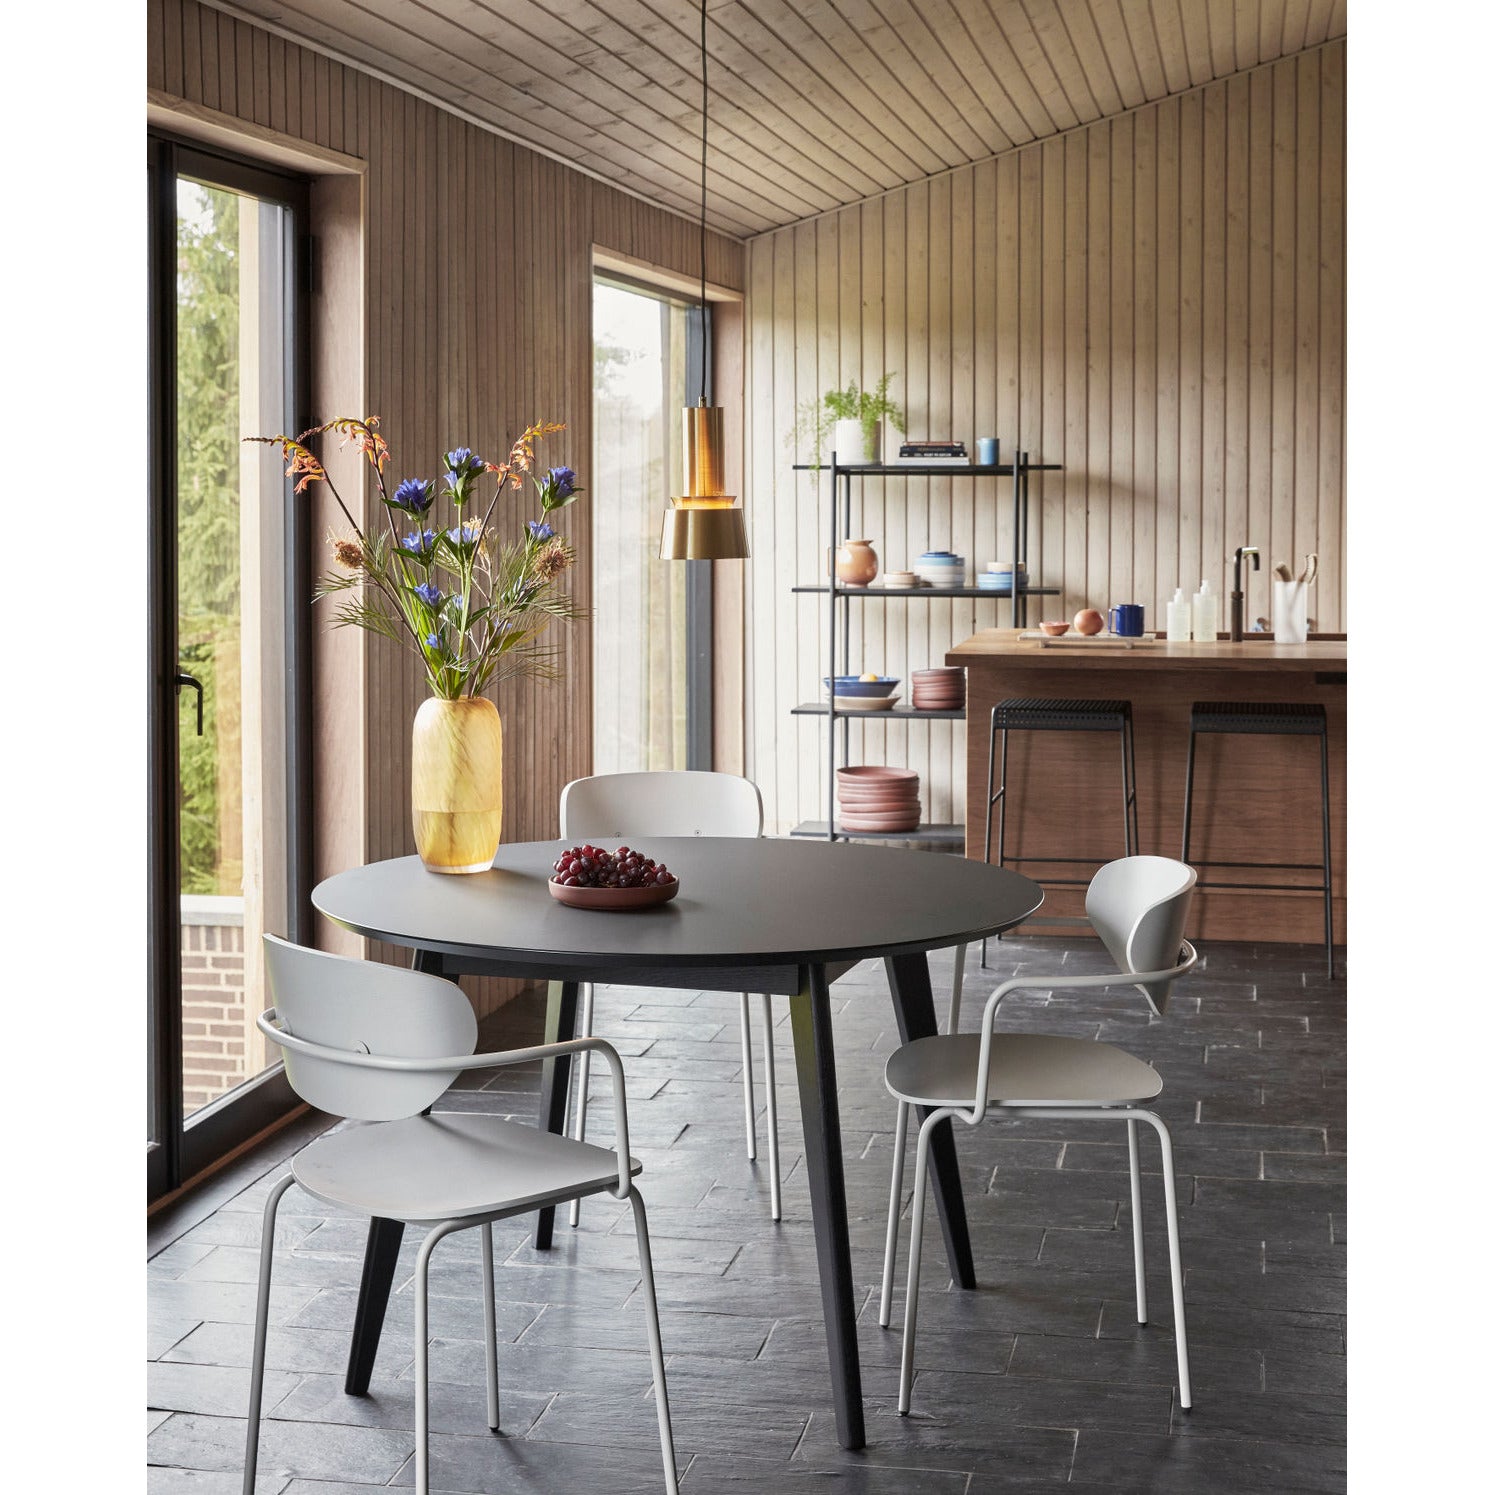 Hübsch - Stay spisebord rundt svart med laminattop ø120xh76cm